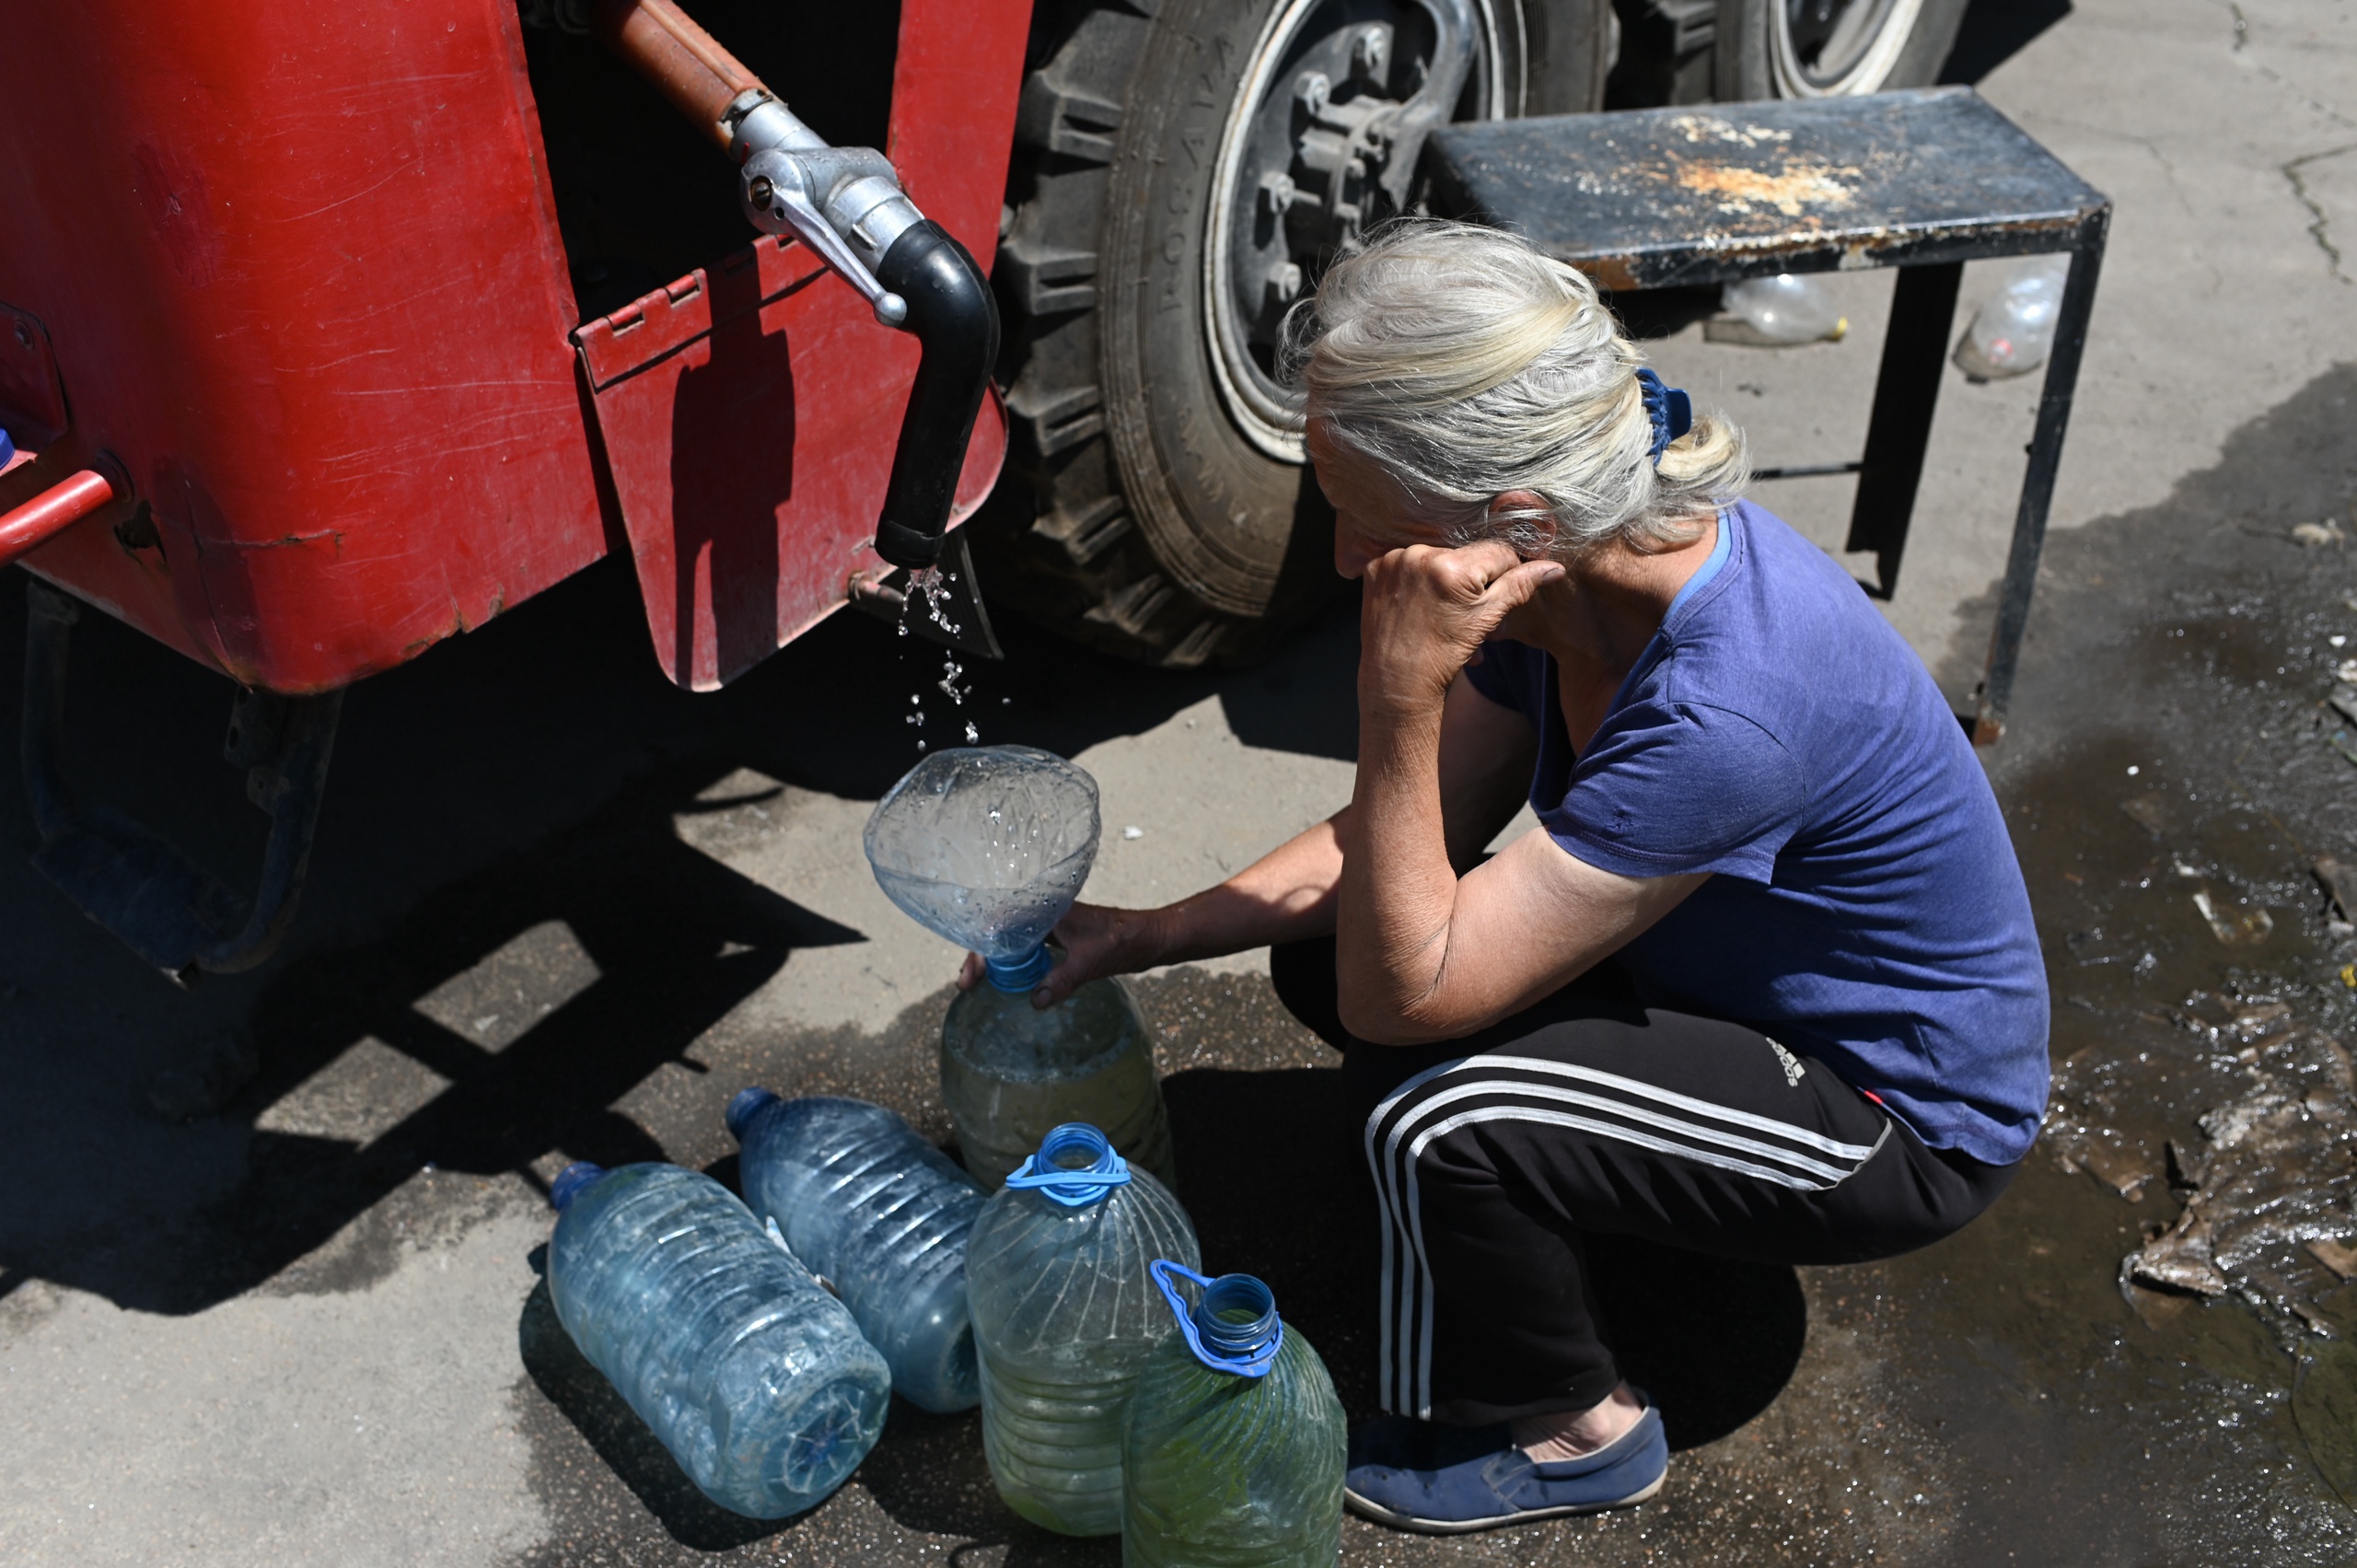 Inwoner van Lisitsjansk haalt water bij een brandweerauto